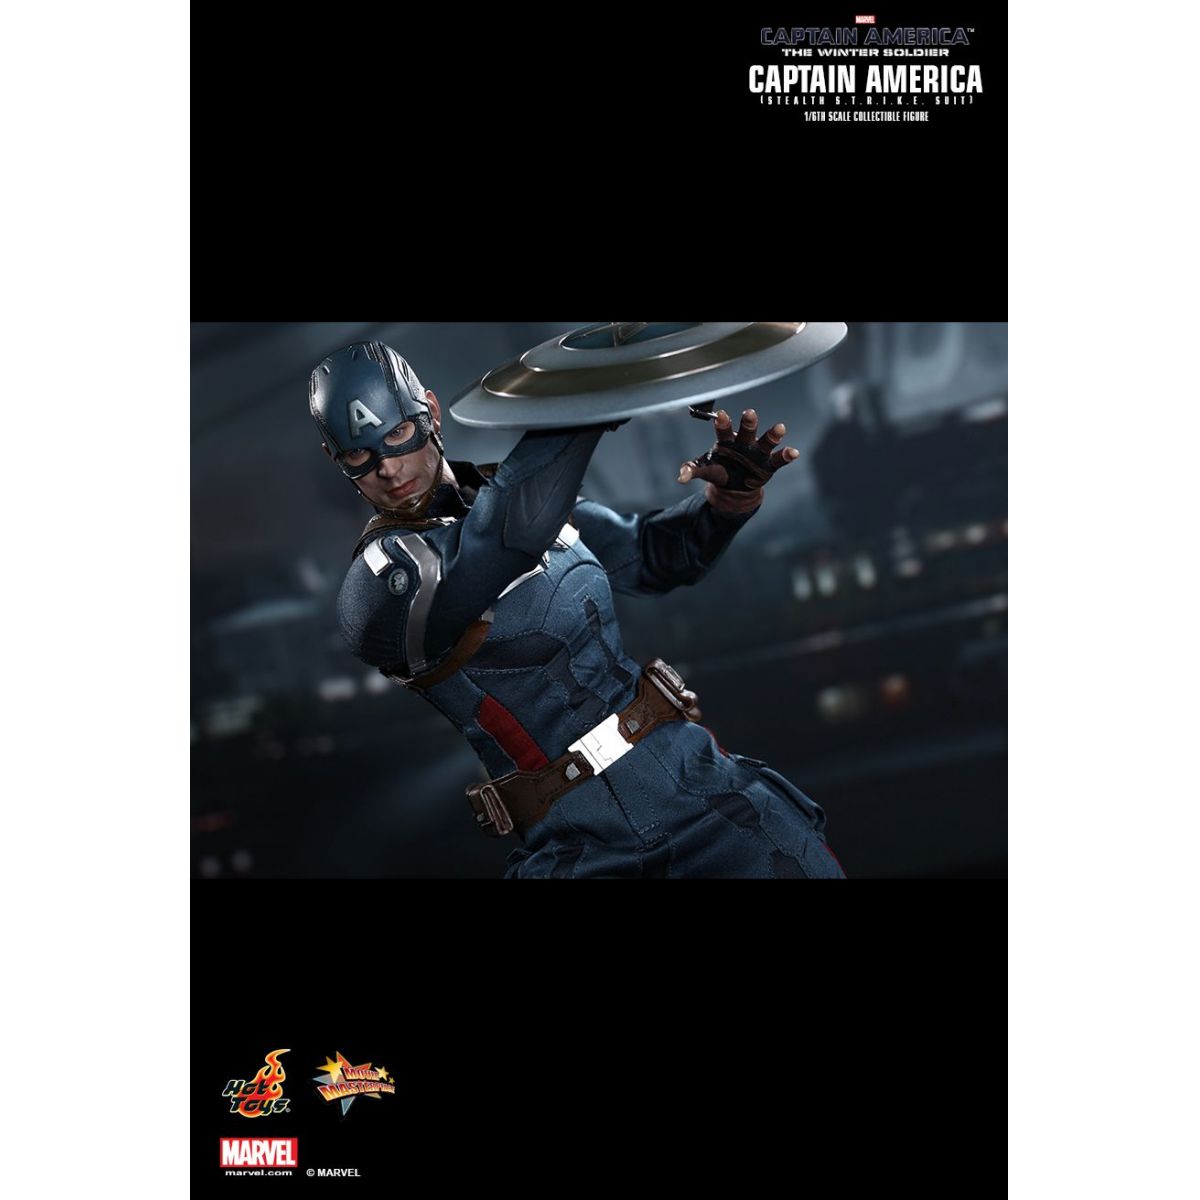 Boneco Capitão América (Stealth STRIKE Suit): Capitão América 2: O Soldado Invernal (The Winter Soldier) Escala 1/6 - Hot Toys